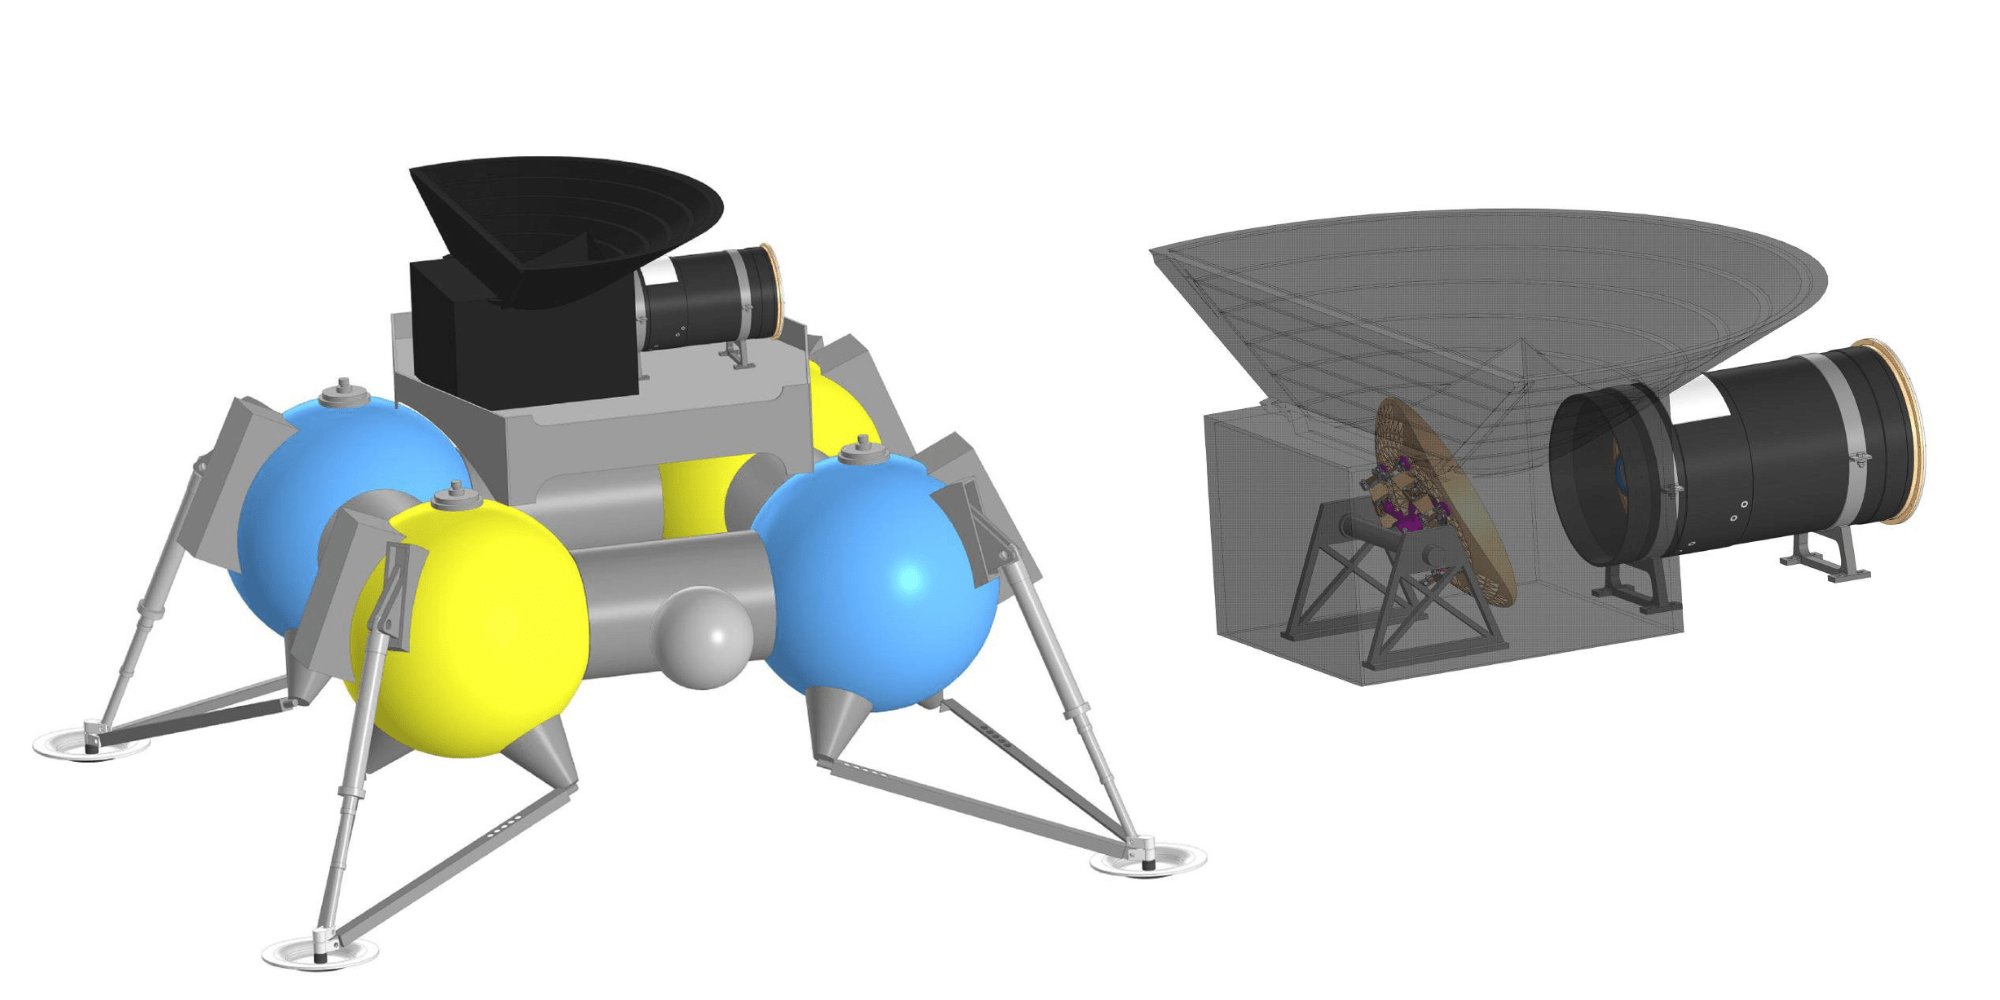 Concept design del telescopio lunare UV proposto da scienziati russi e cinesi, la cui istallazione su suolo lunare è prevista durante la missione ILRS-5 del 2035. Credits: CNSA, Roscosmos